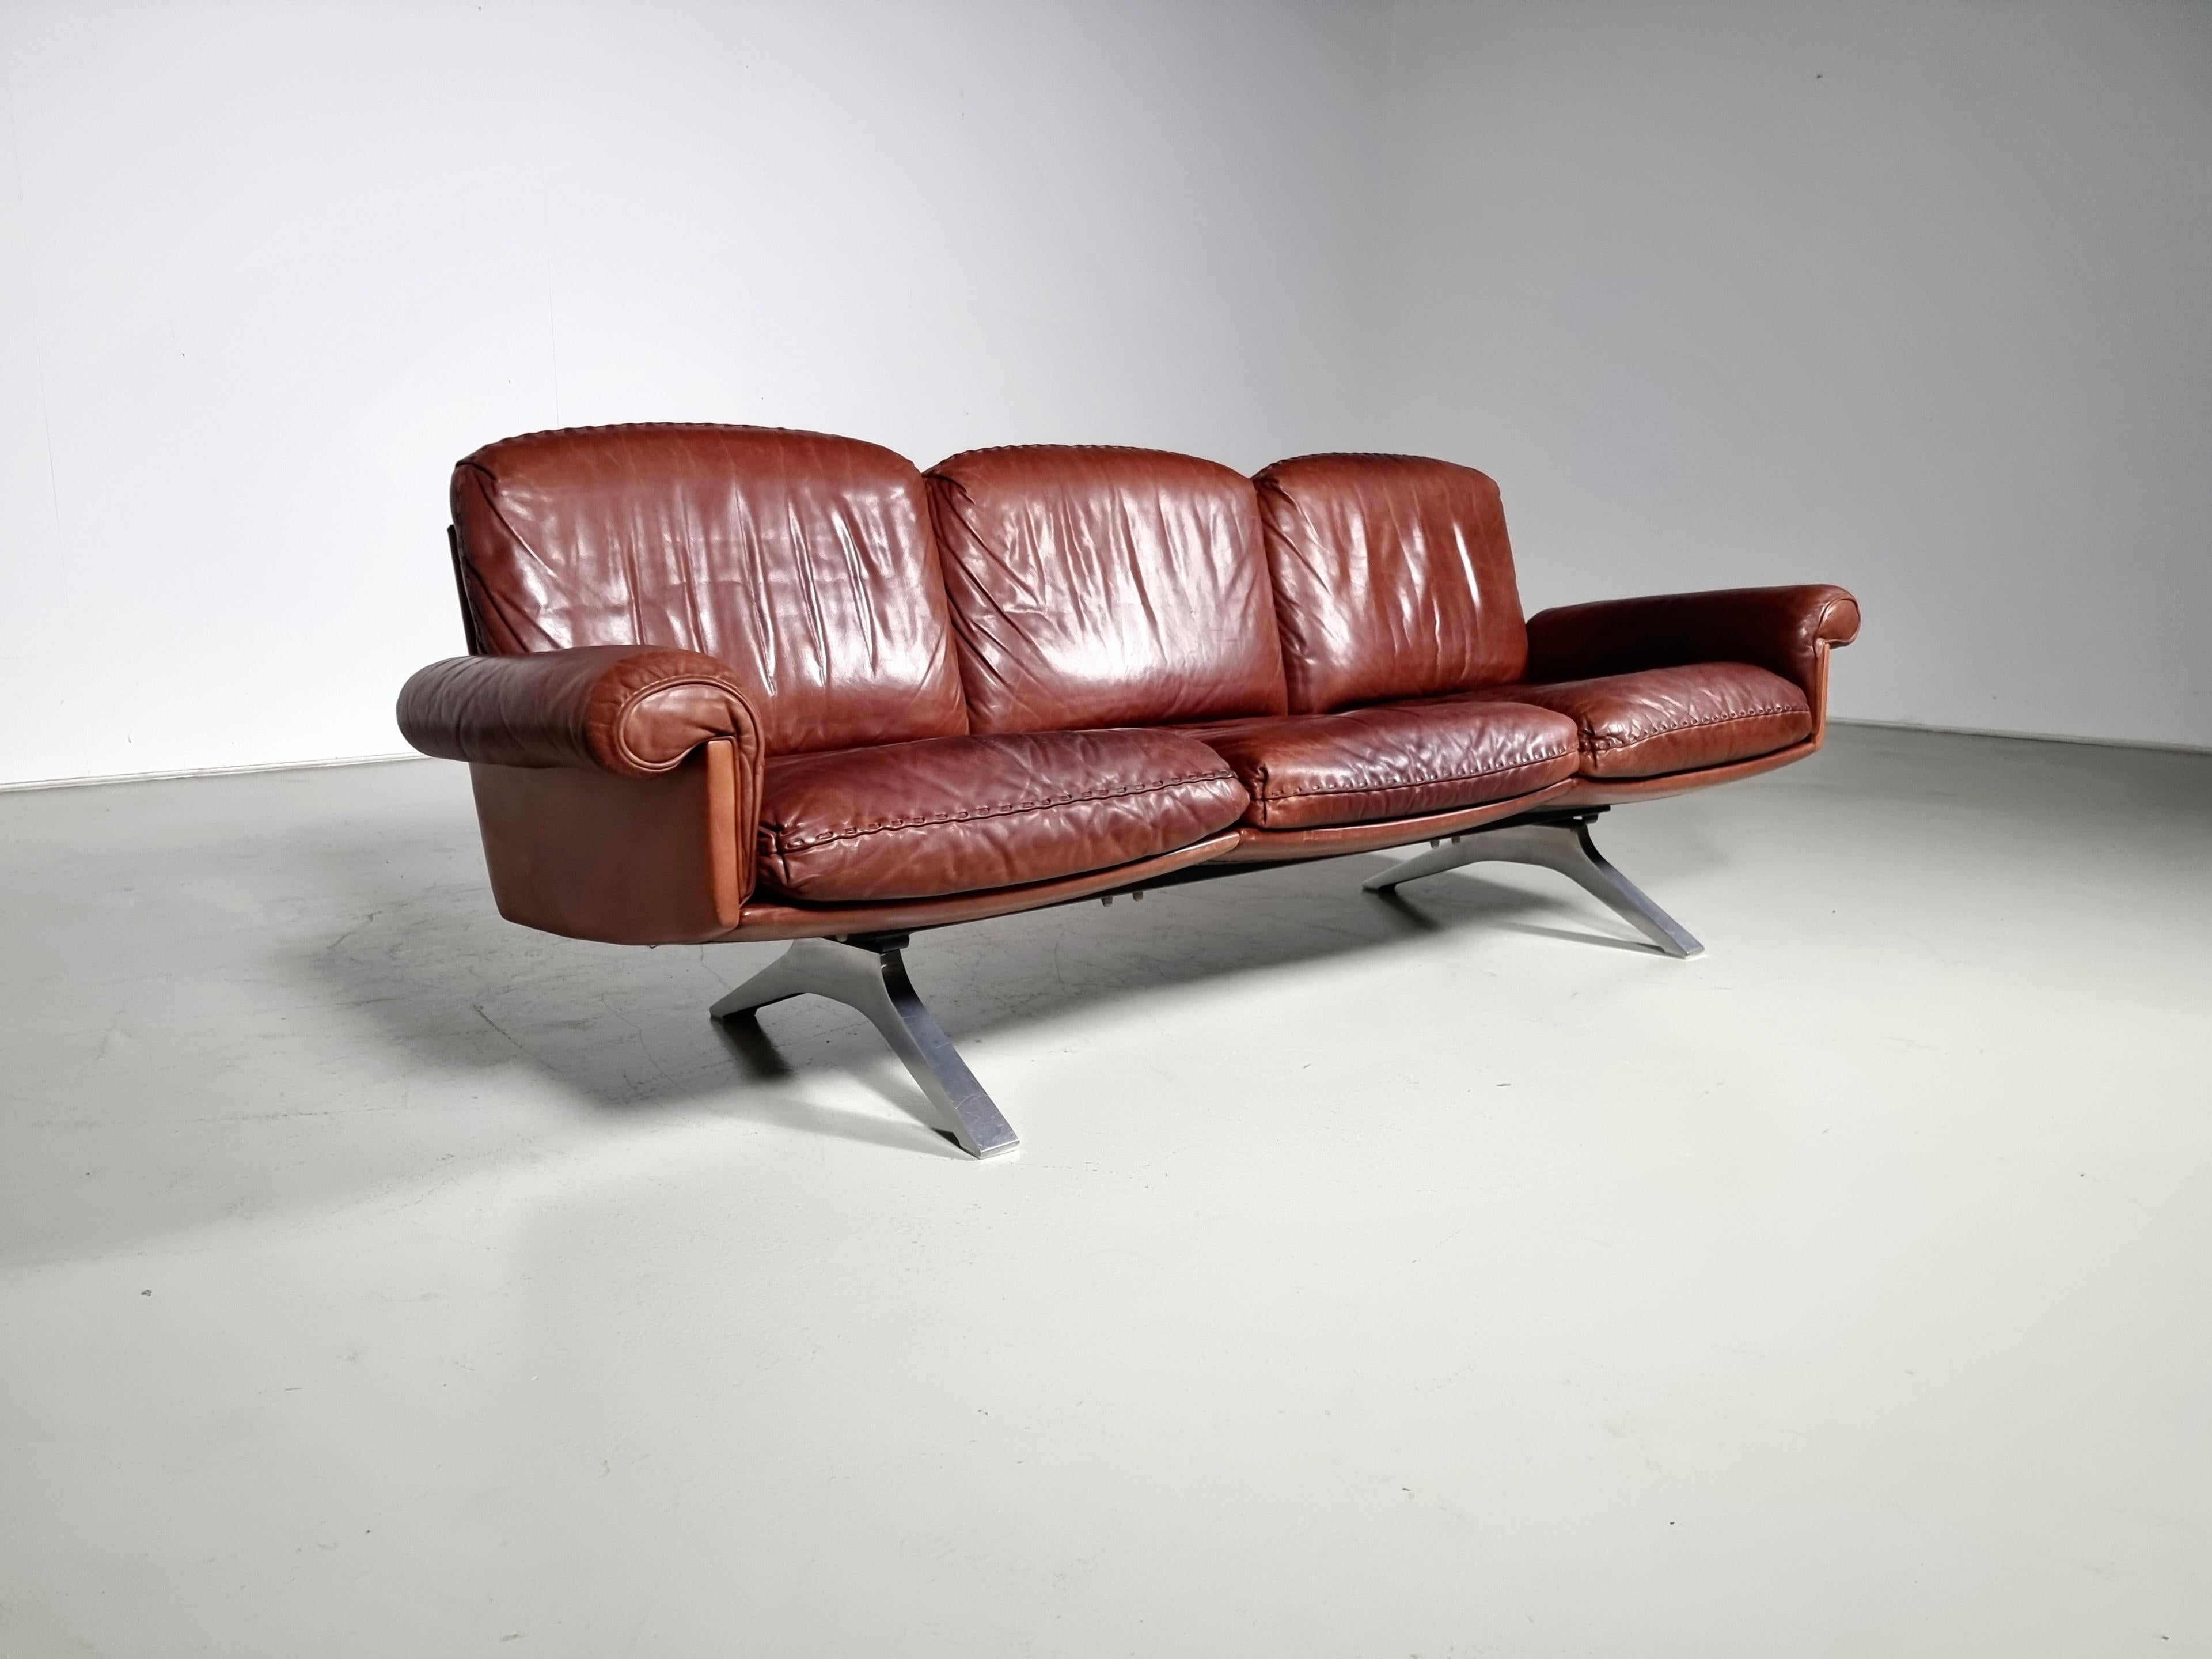 De Sede ''DS-31'' 3-Sitzer Sofa, Leder, verchromtes Metall, Schweiz, 1970er Jahre

Der tiefe Sitz und die geschwungenen Armlehnen garantieren ein bequemes Sitzerlebnis. Auch die dicken Ledersitzkissen bieten ein Höchstmaß an Komfort. Dieses Sofa